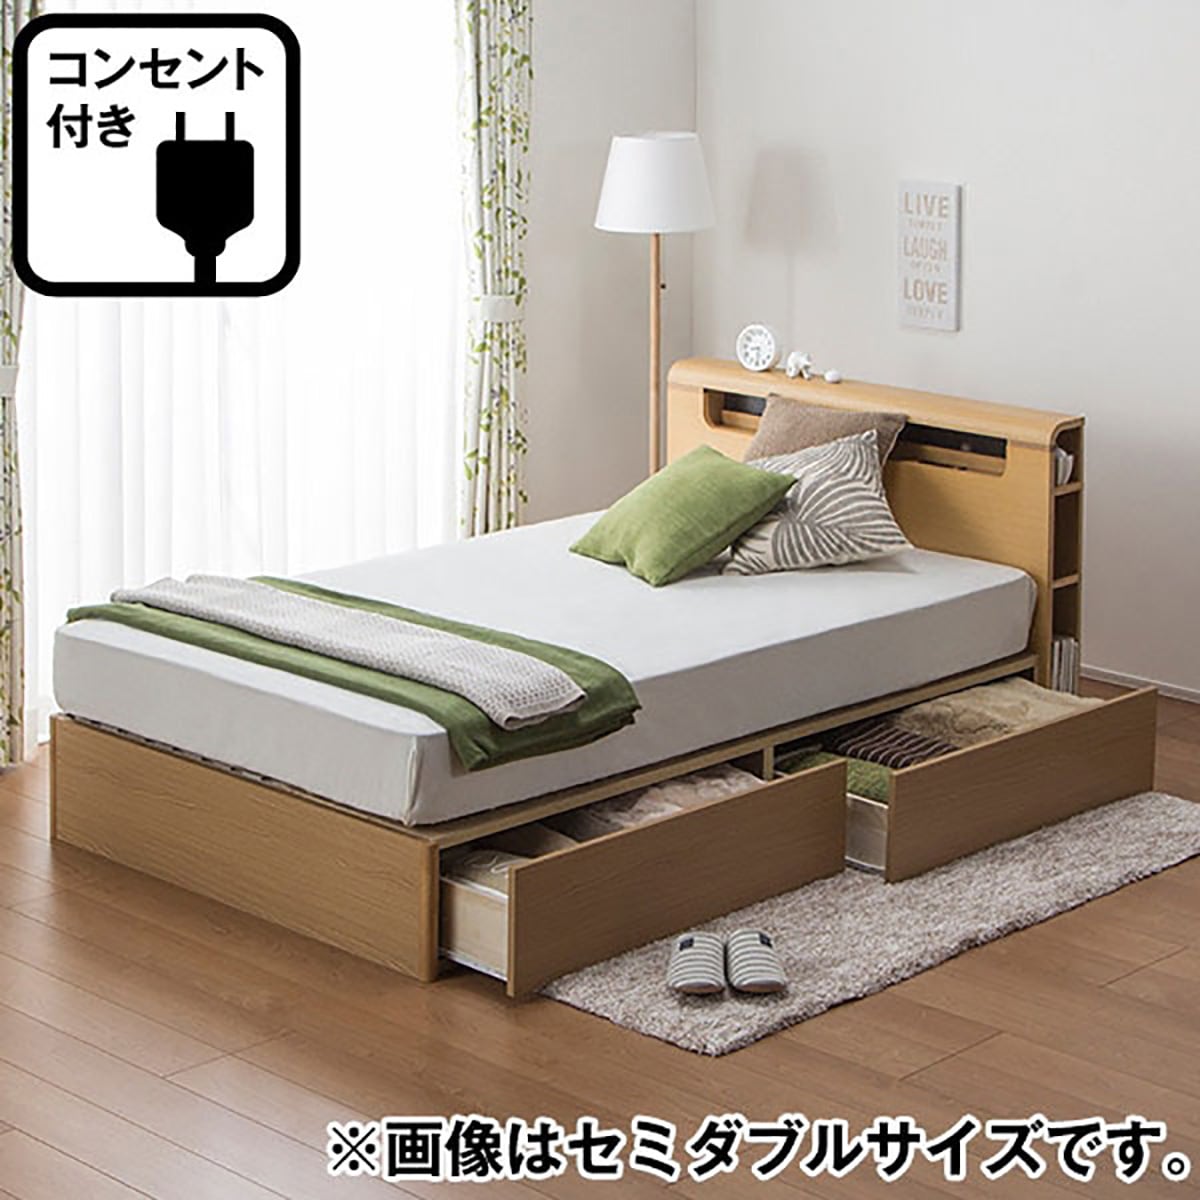 ニトリ ダブル ベッドフレーム ライト付コンセント付 程度良好 - ベッド